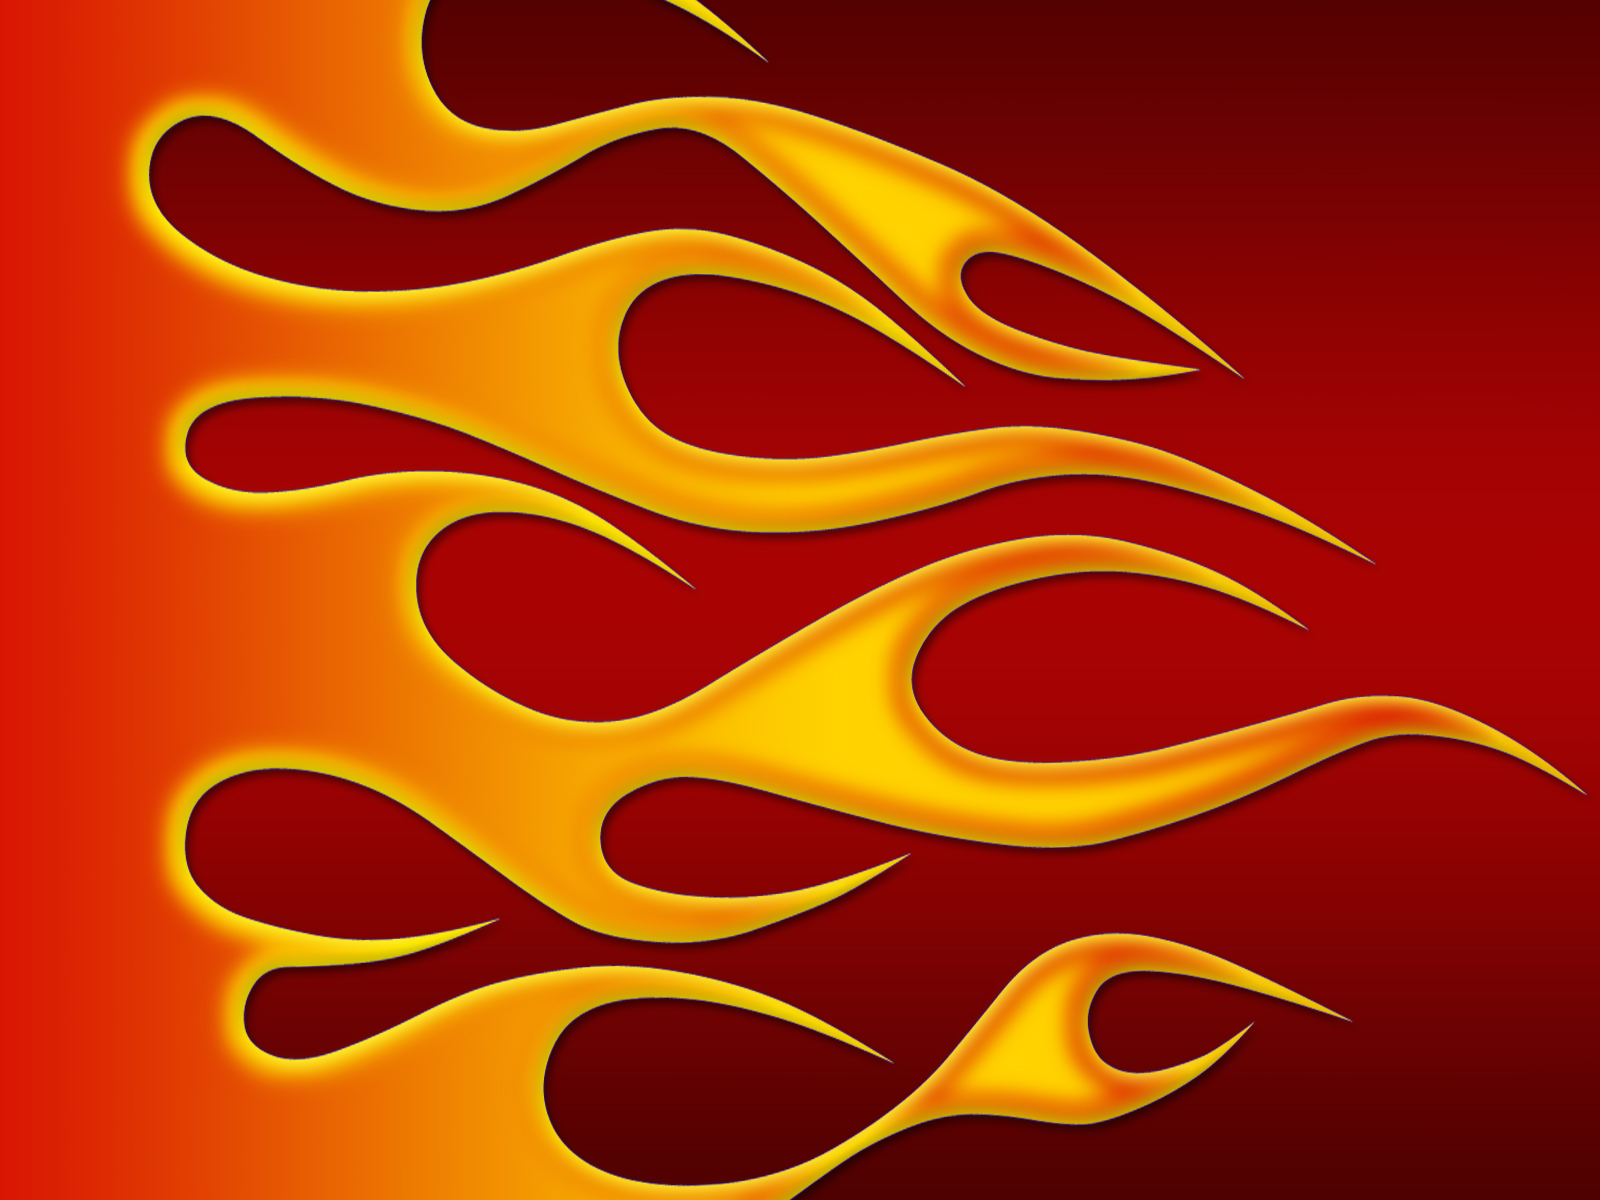 Hot Rod Flames - 8 by jbensch on DeviantArt